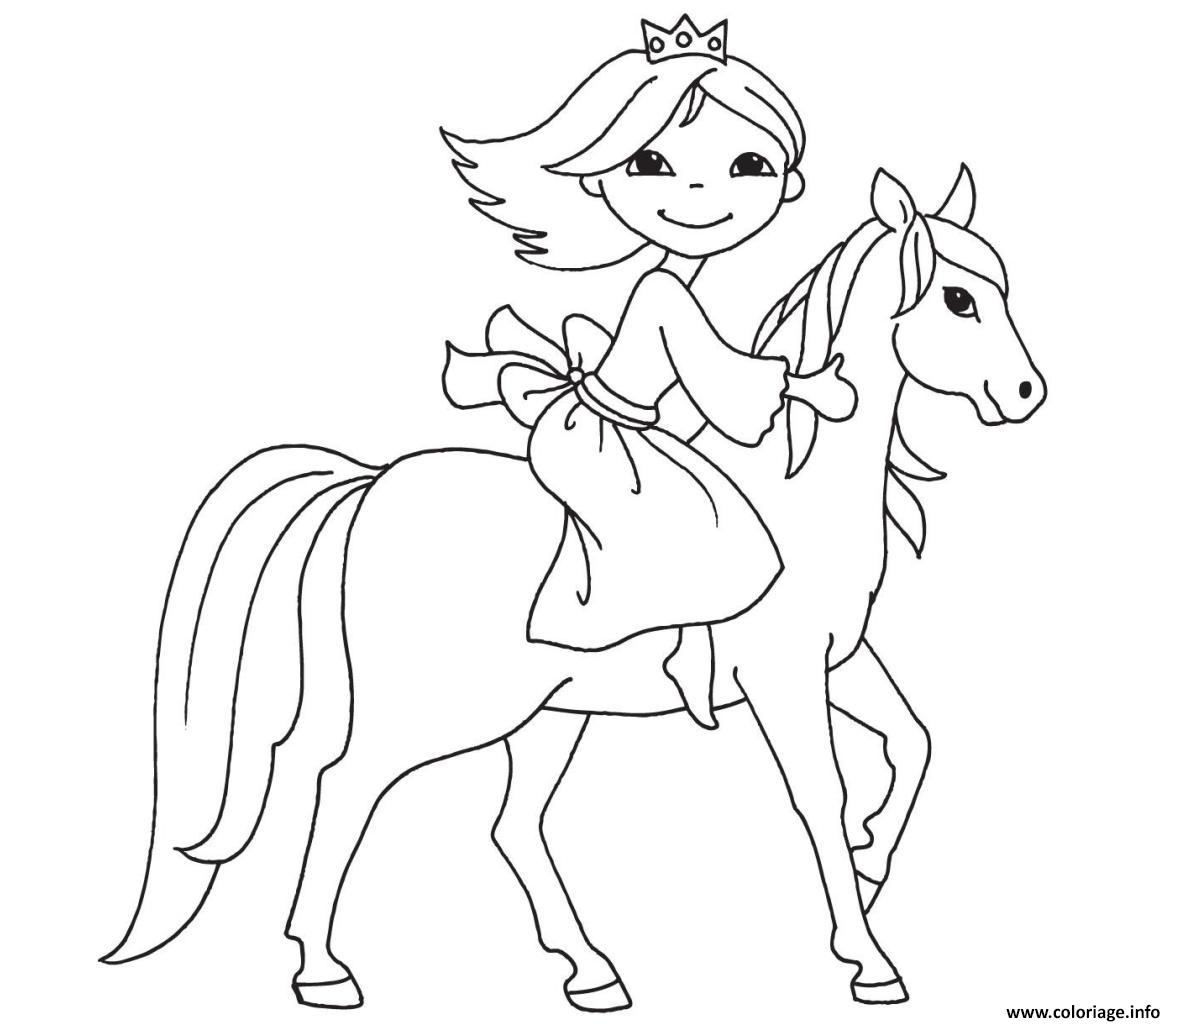 Dessin princesse sur son cheval Coloriage Gratuit à Imprimer